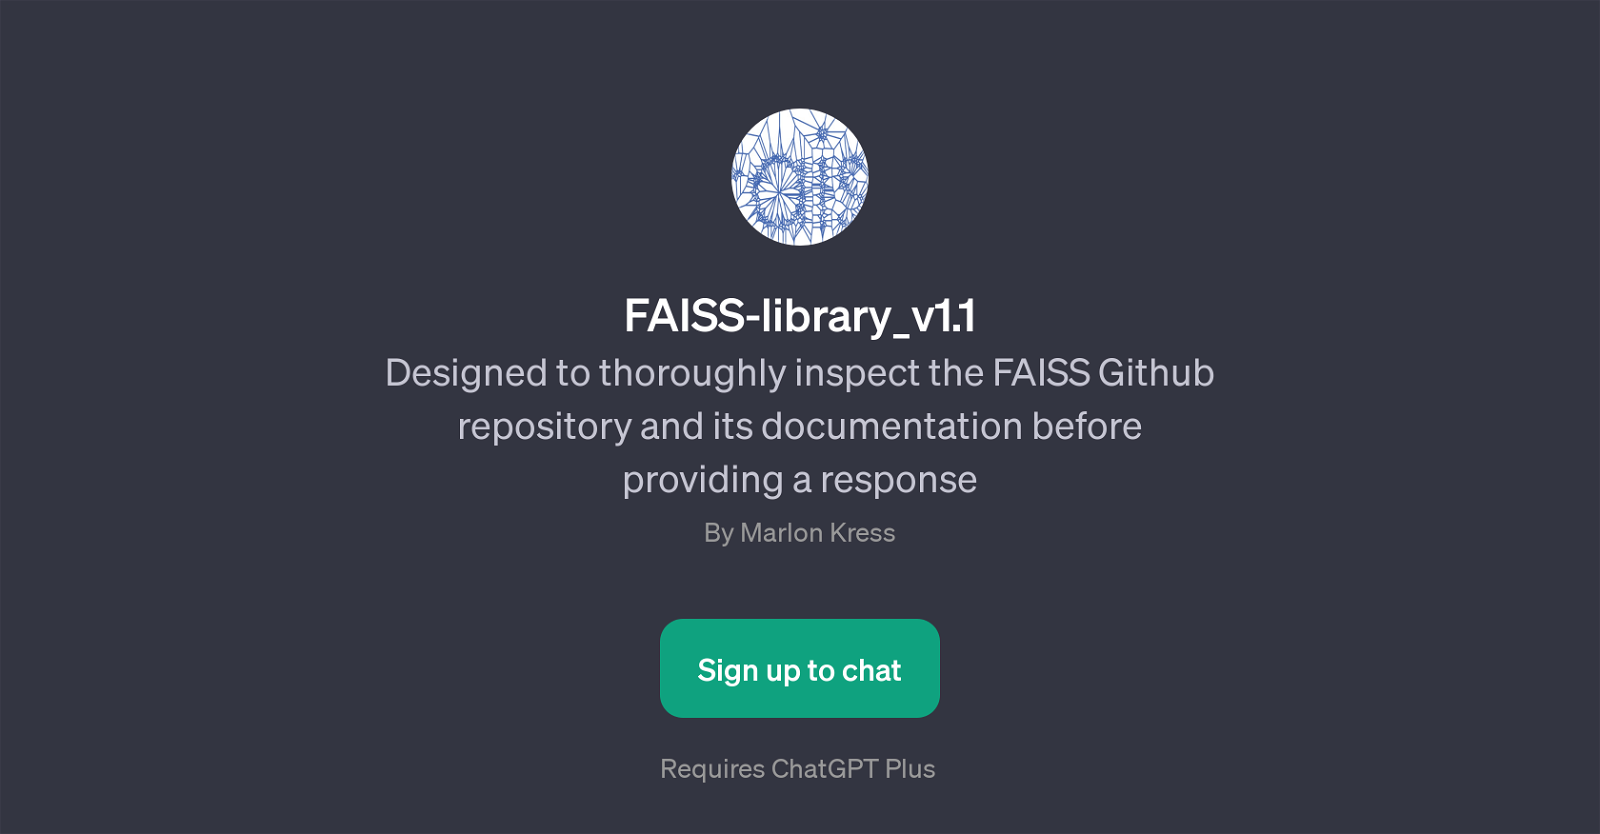 FAISS-library_v1.1 website